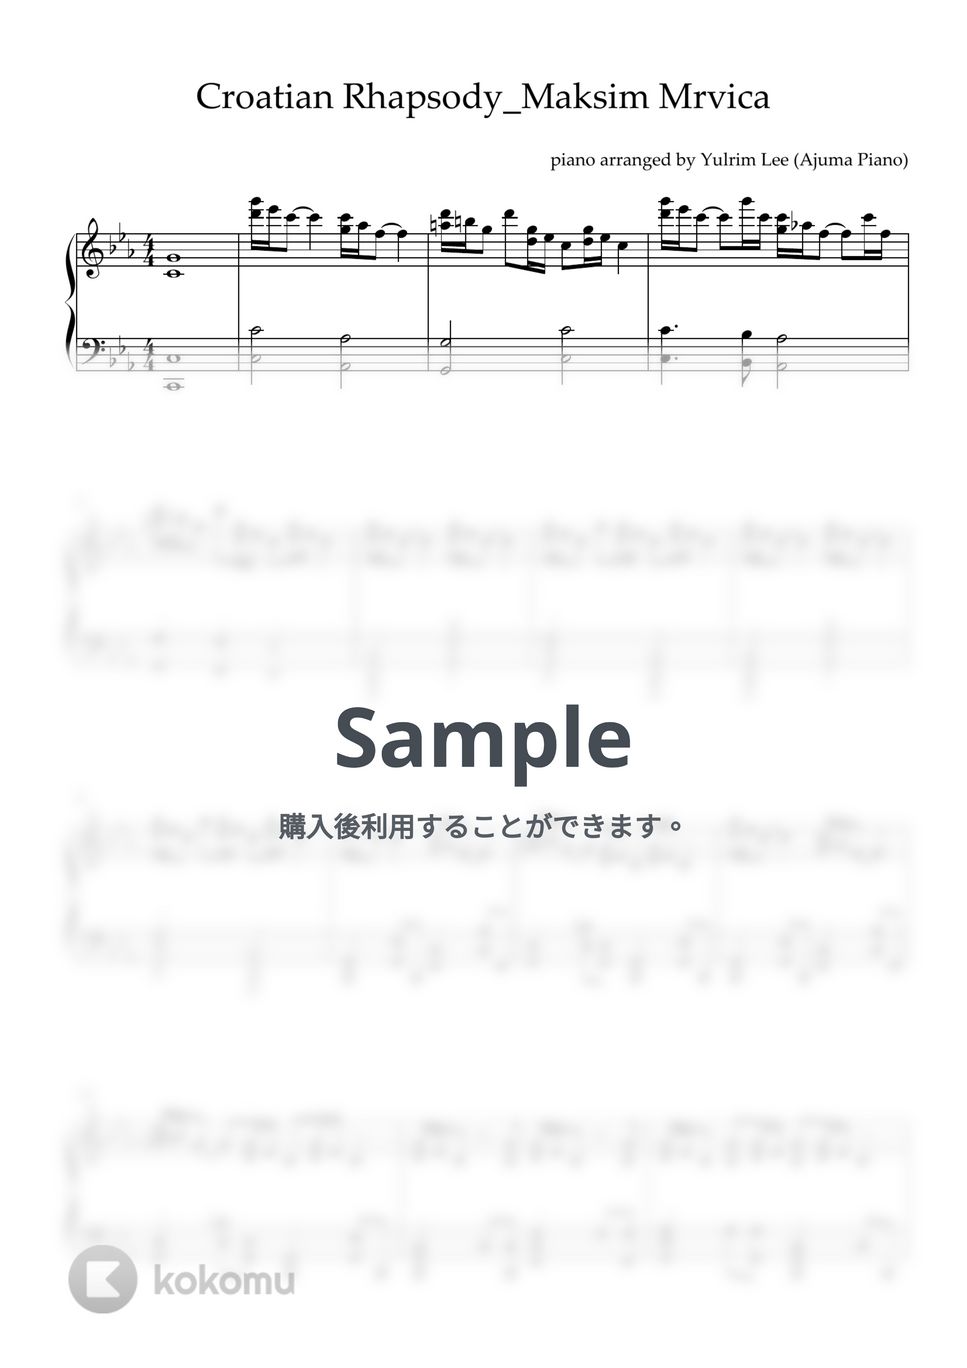 マキシム - クロアチアン・ラプソディ (ピアノソロ) by Ajuma Piano